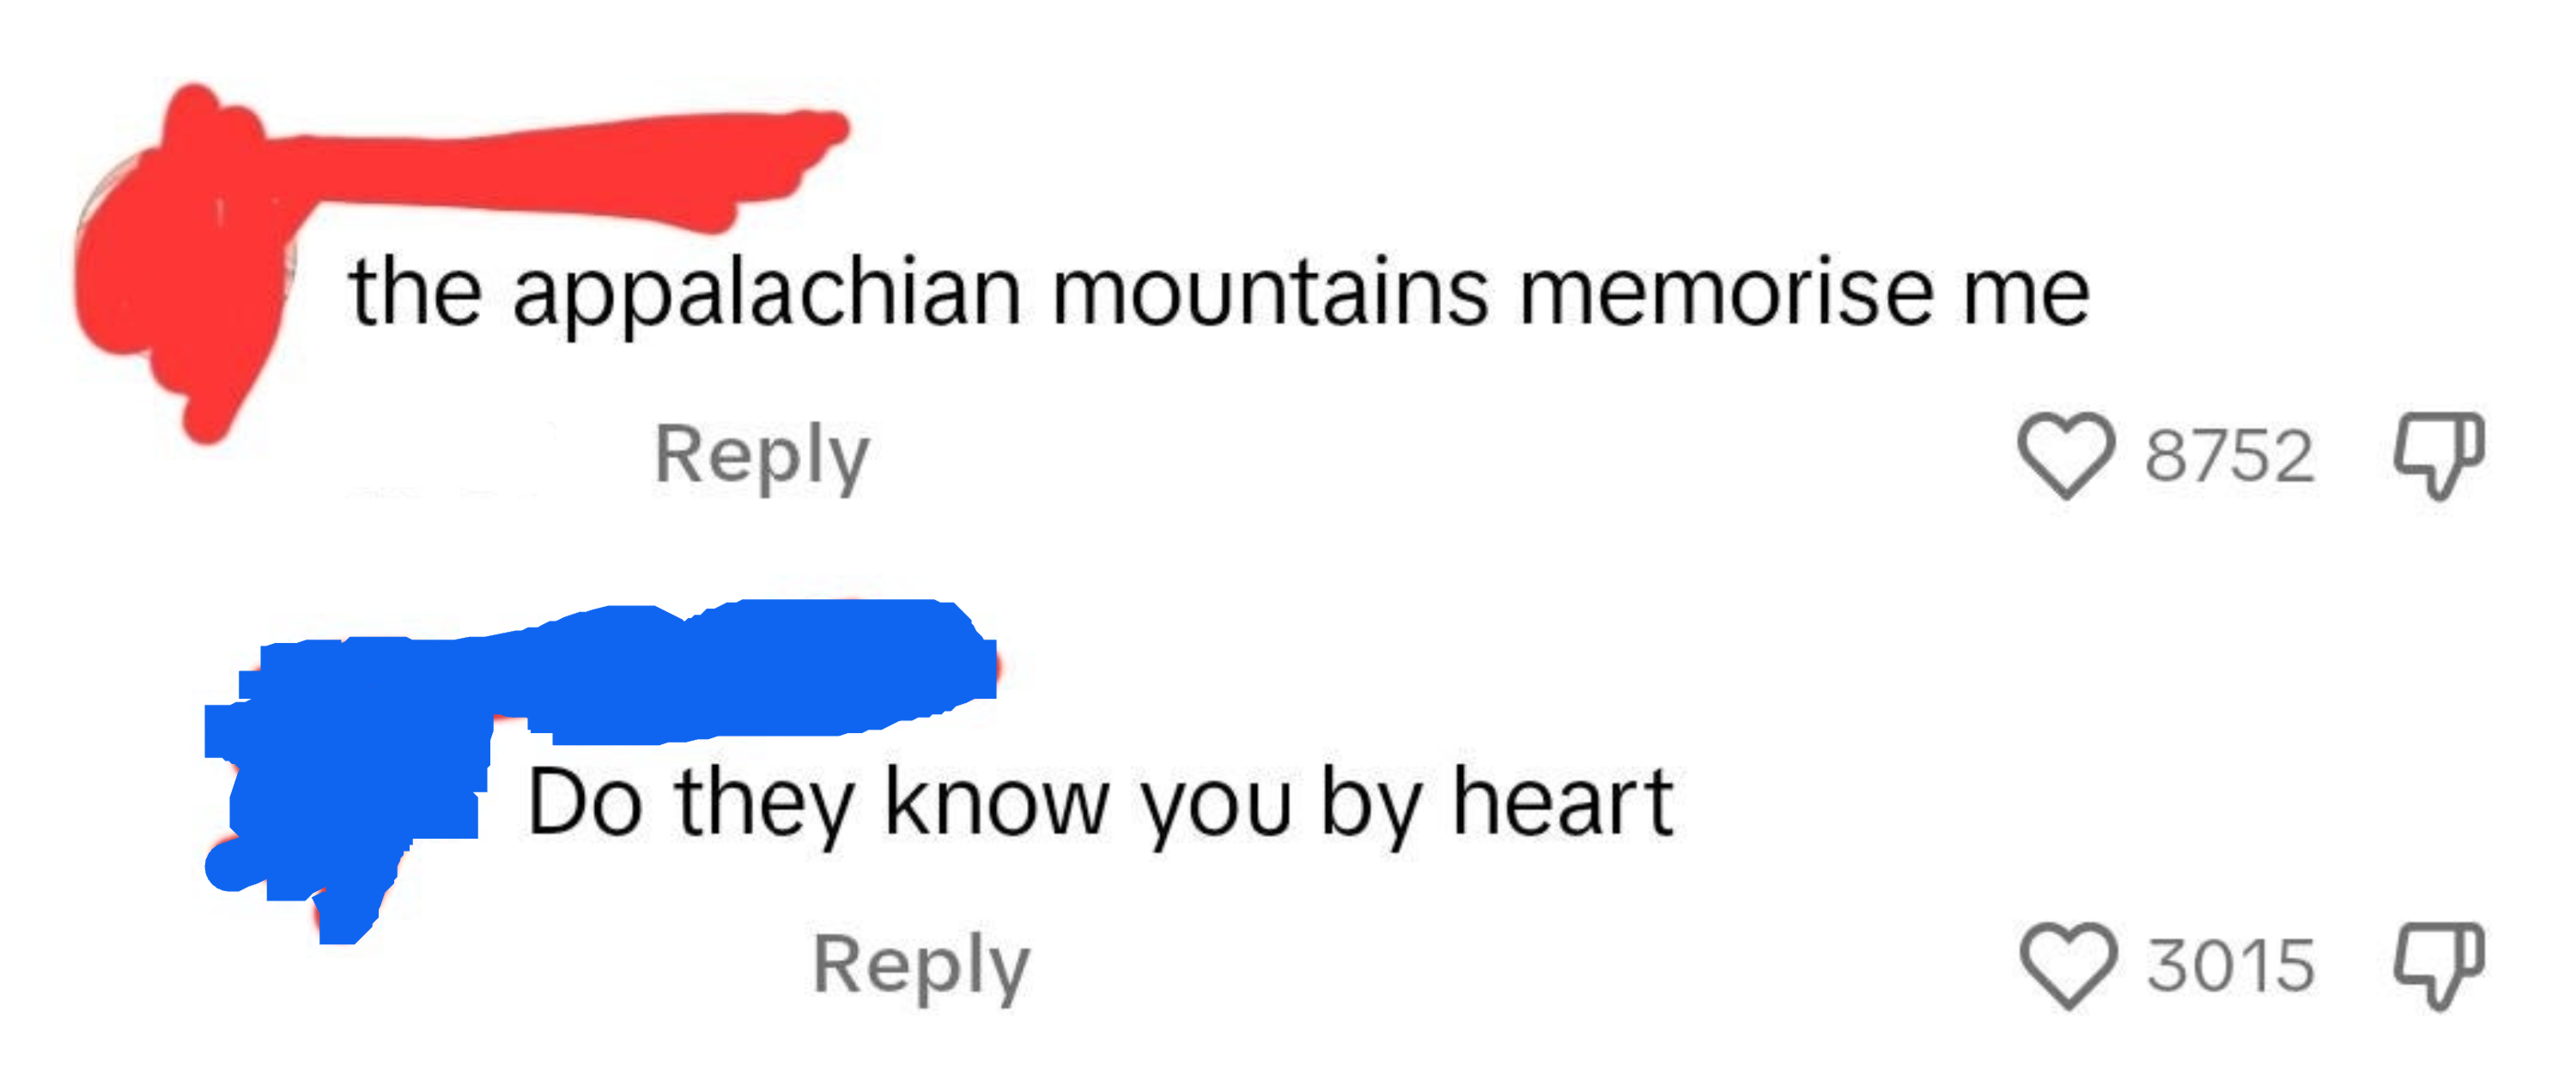 &quot;The appalachian mountains memorise me&quot;